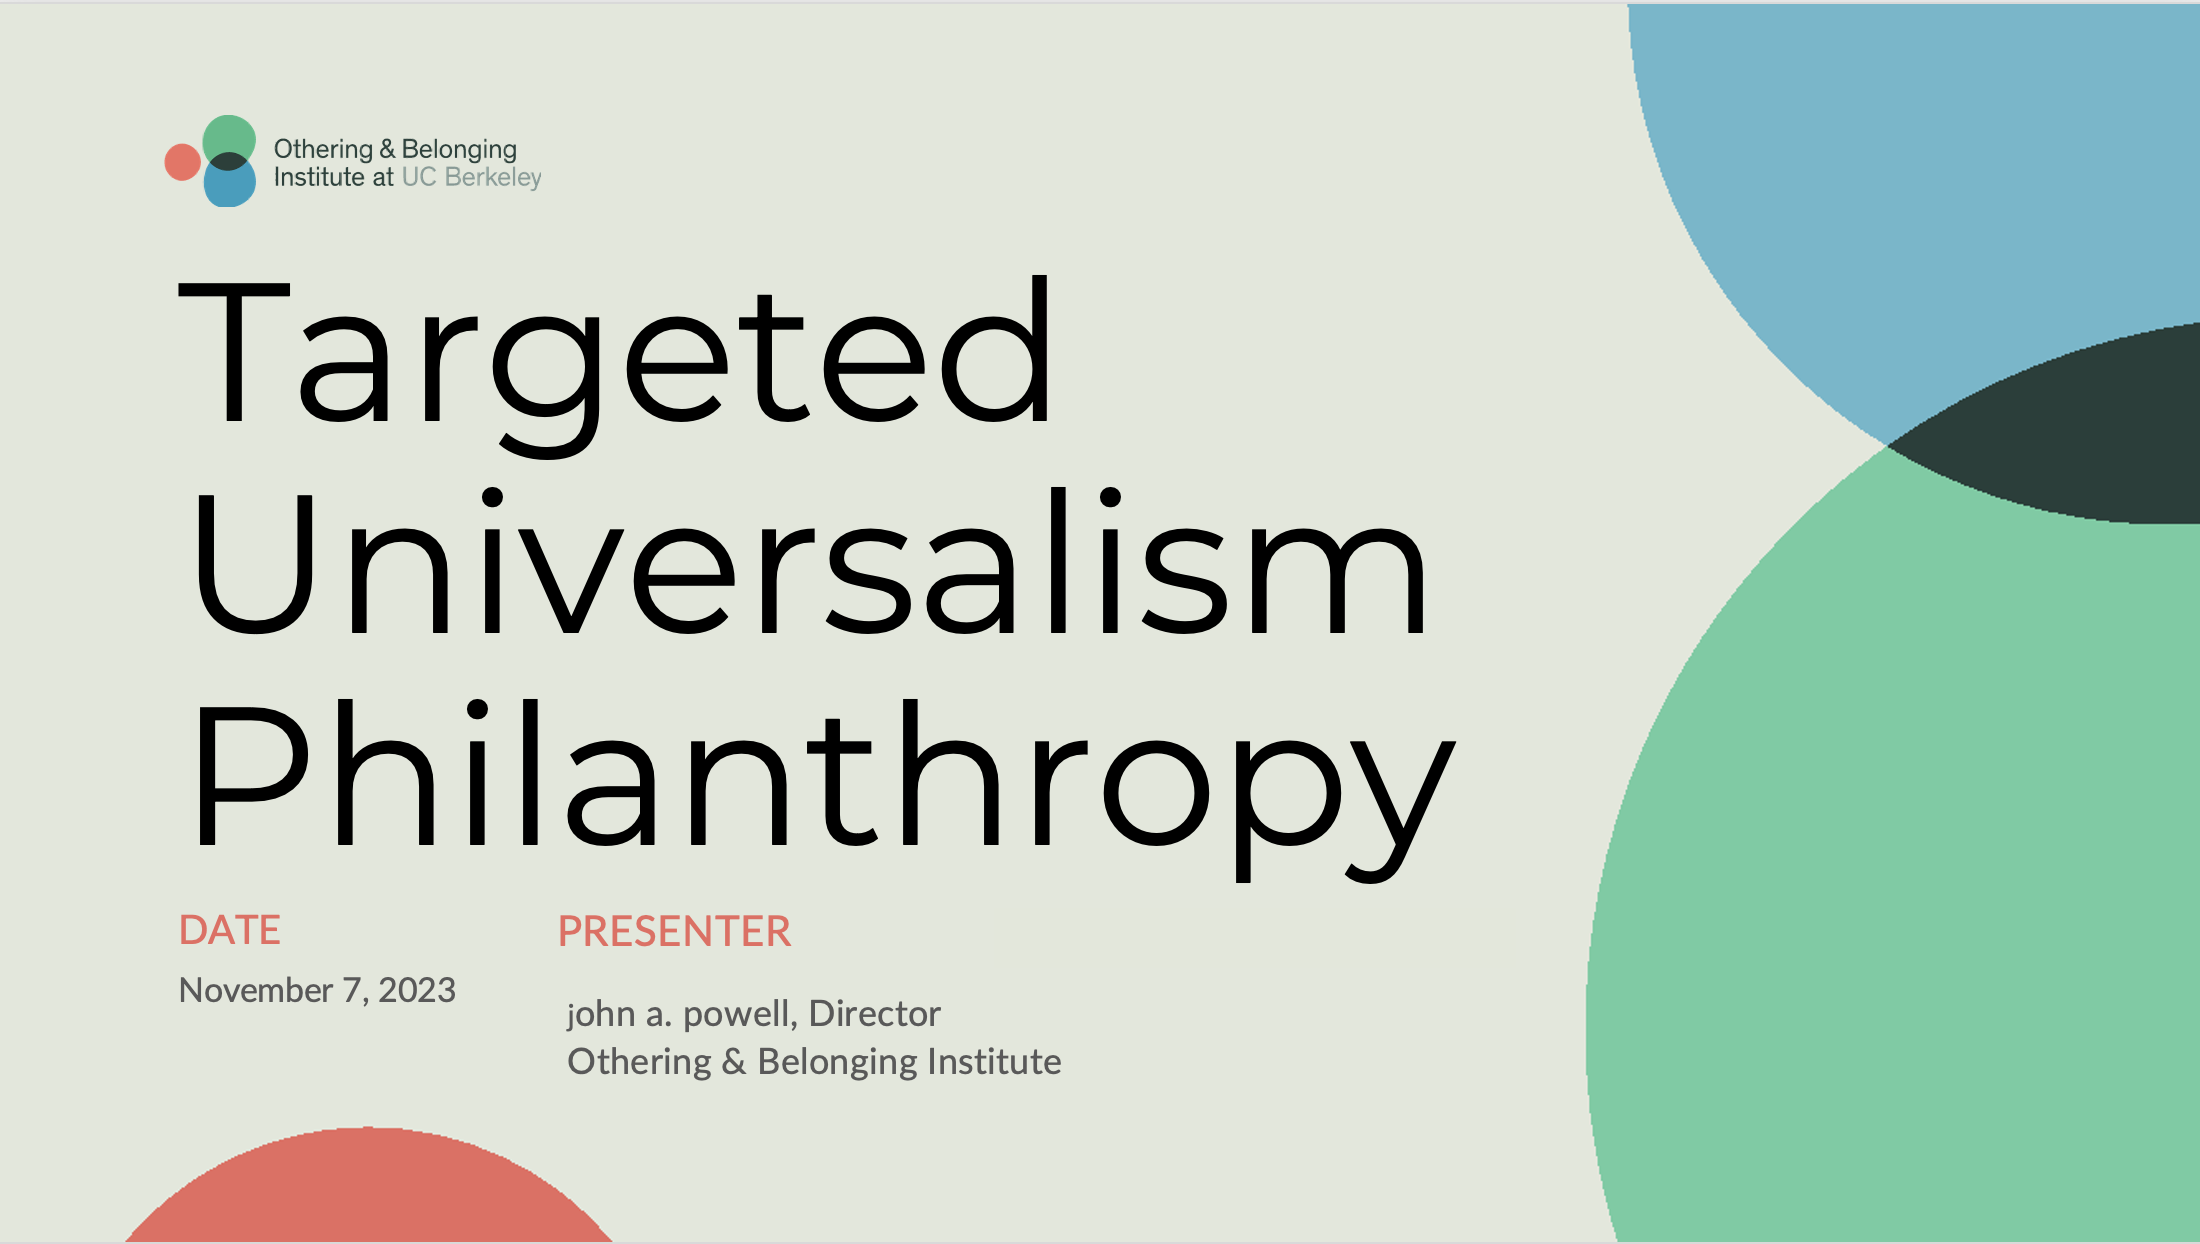 Slidedeck title "Targeted Universalism Philanthropy"